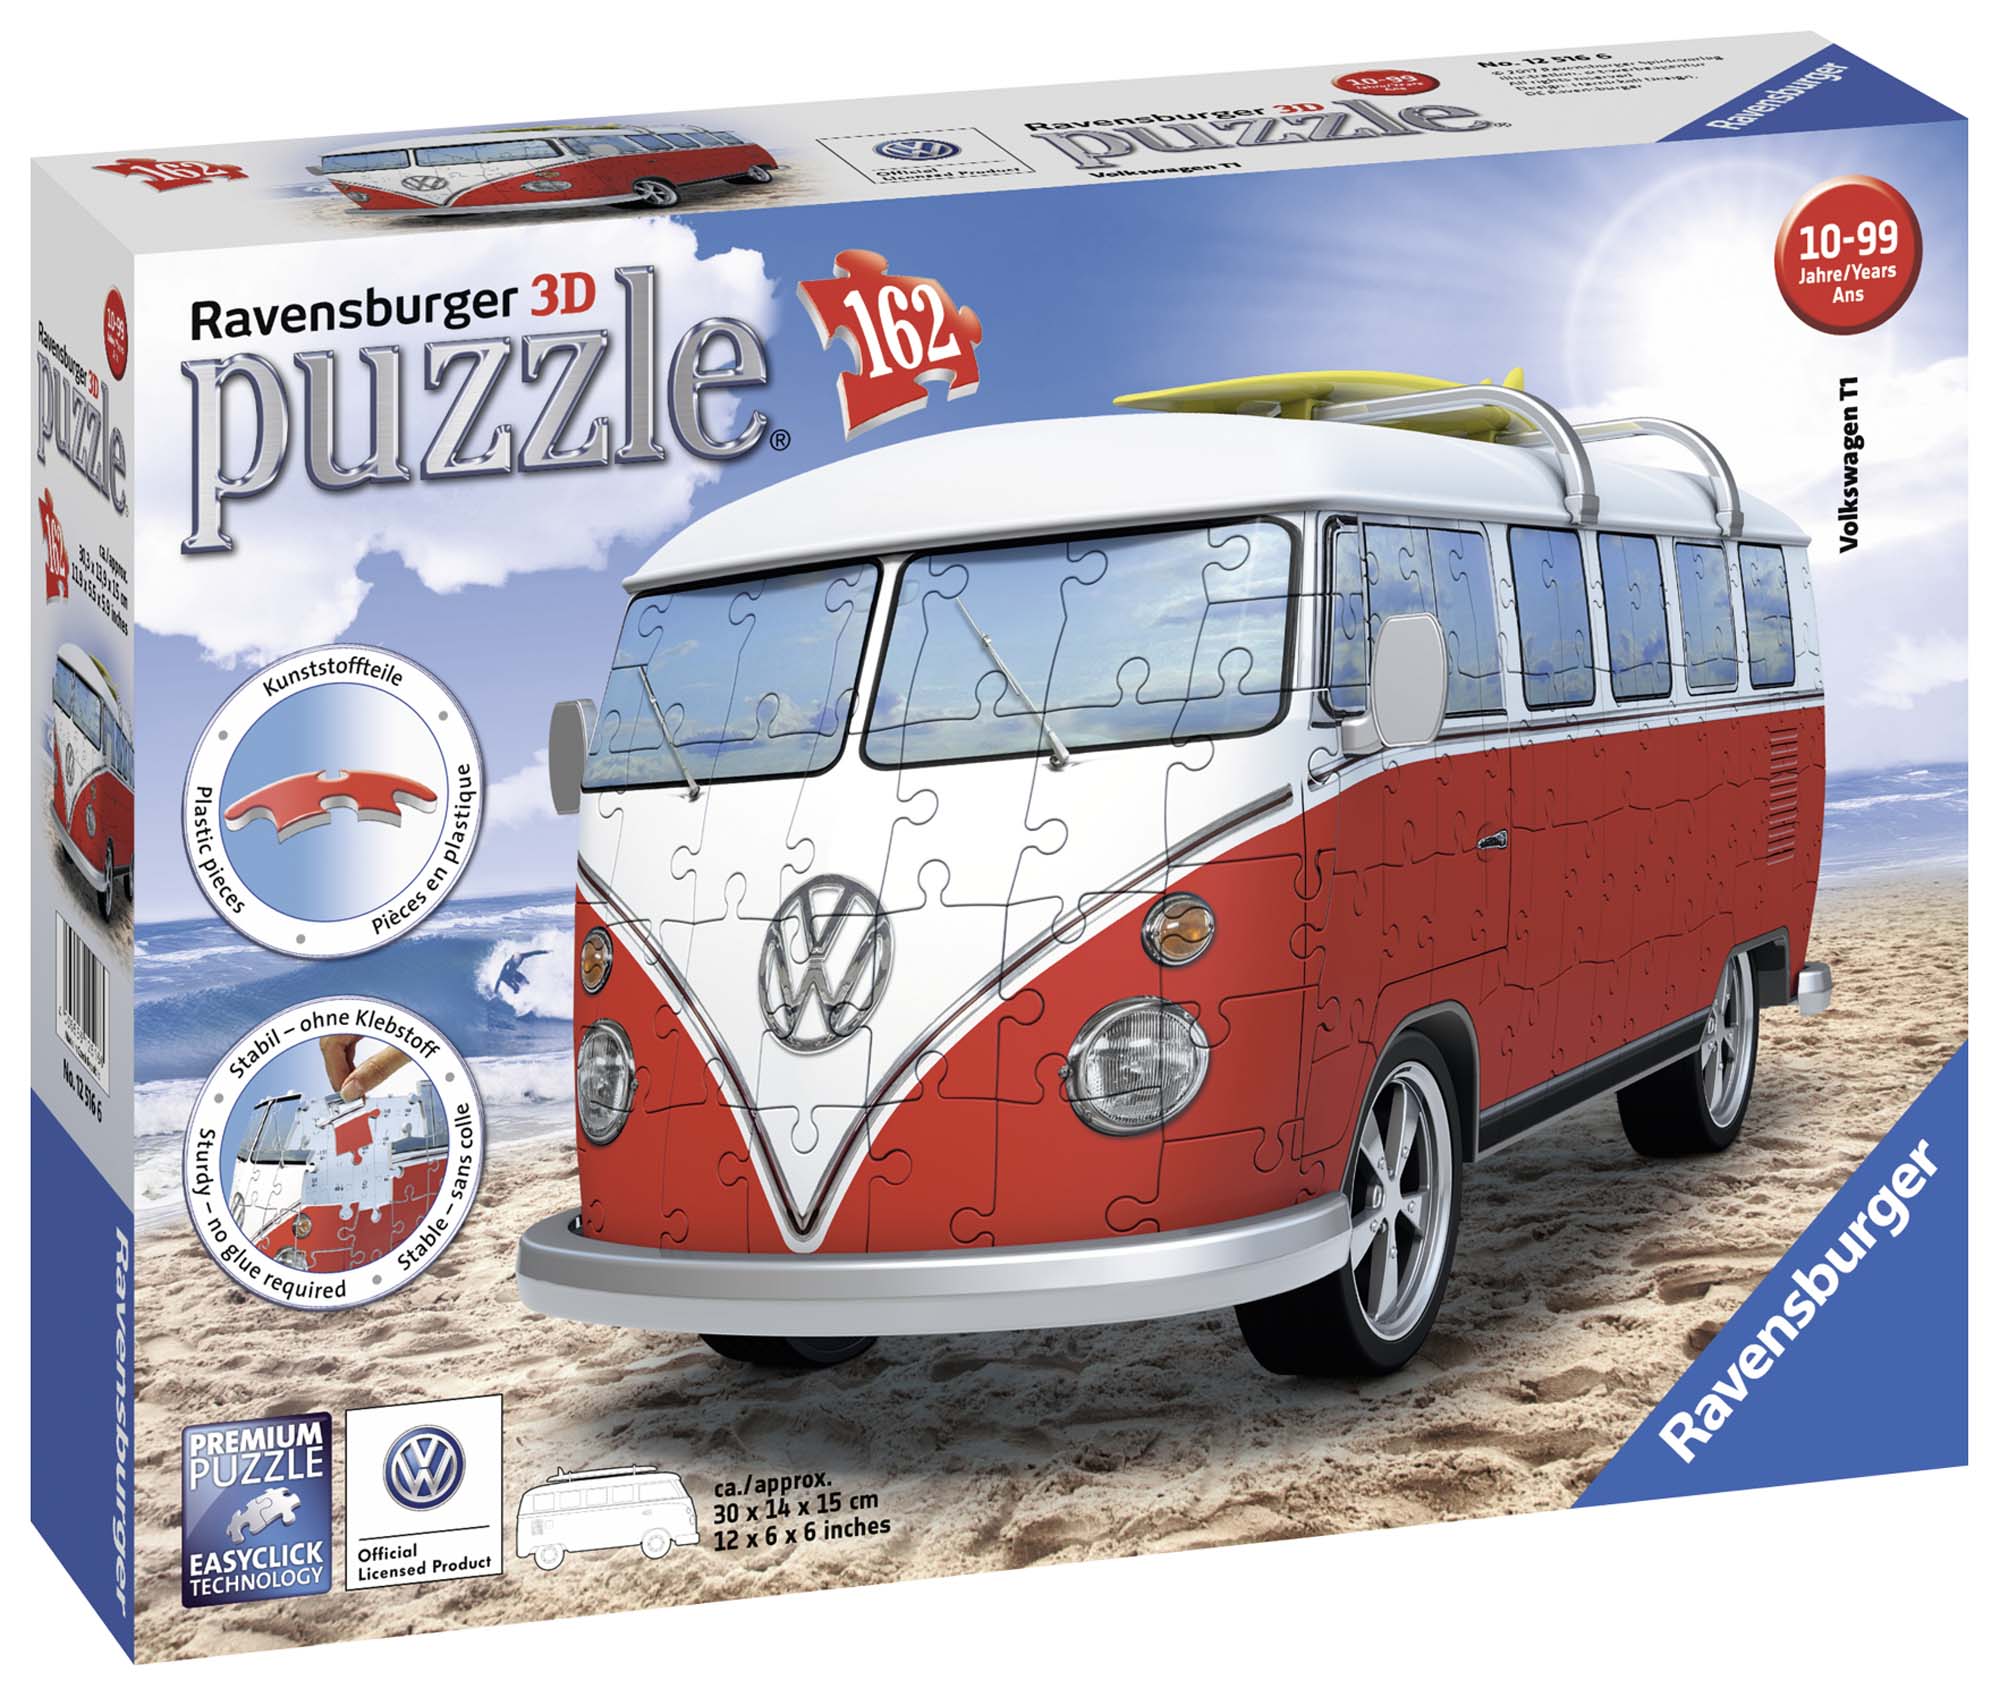 Ravensburger - 3d puzzle camper volkswagen t1, 162 pezzi, 8+ anni - RAVENSBURGER 3D PUZZLE